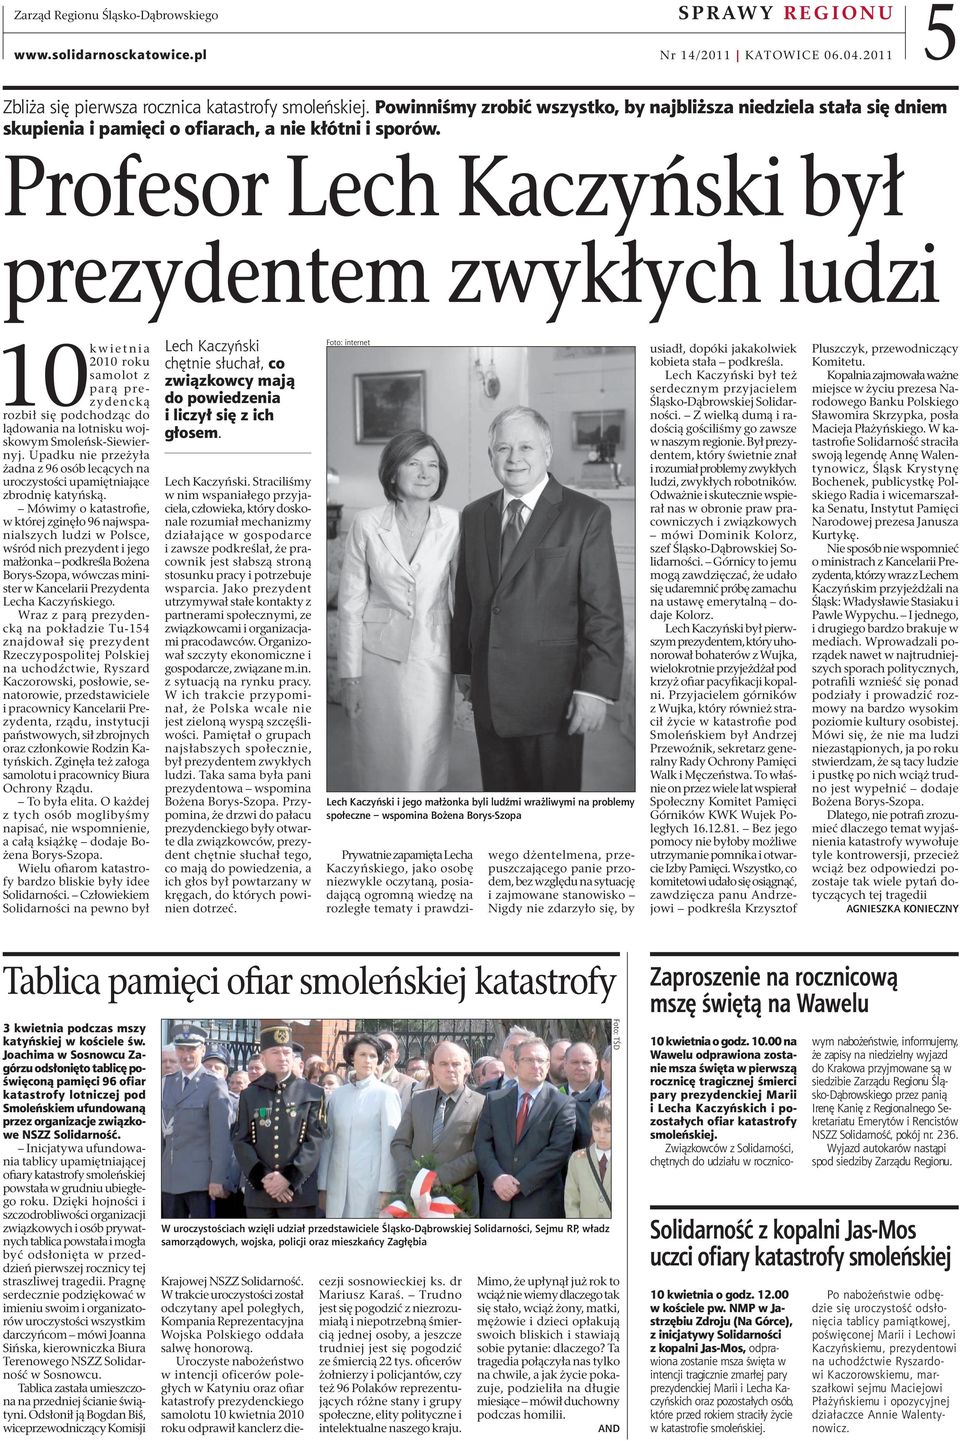 Profesor Lech Kaczyński był prezydentem zwykłych ludzi 10 kwietnia 2010 roku samolot z parą prezydencką rozbił się podchodząc do lądowania na lotnisku wojskowym Smoleńsk-Siewiernyj.